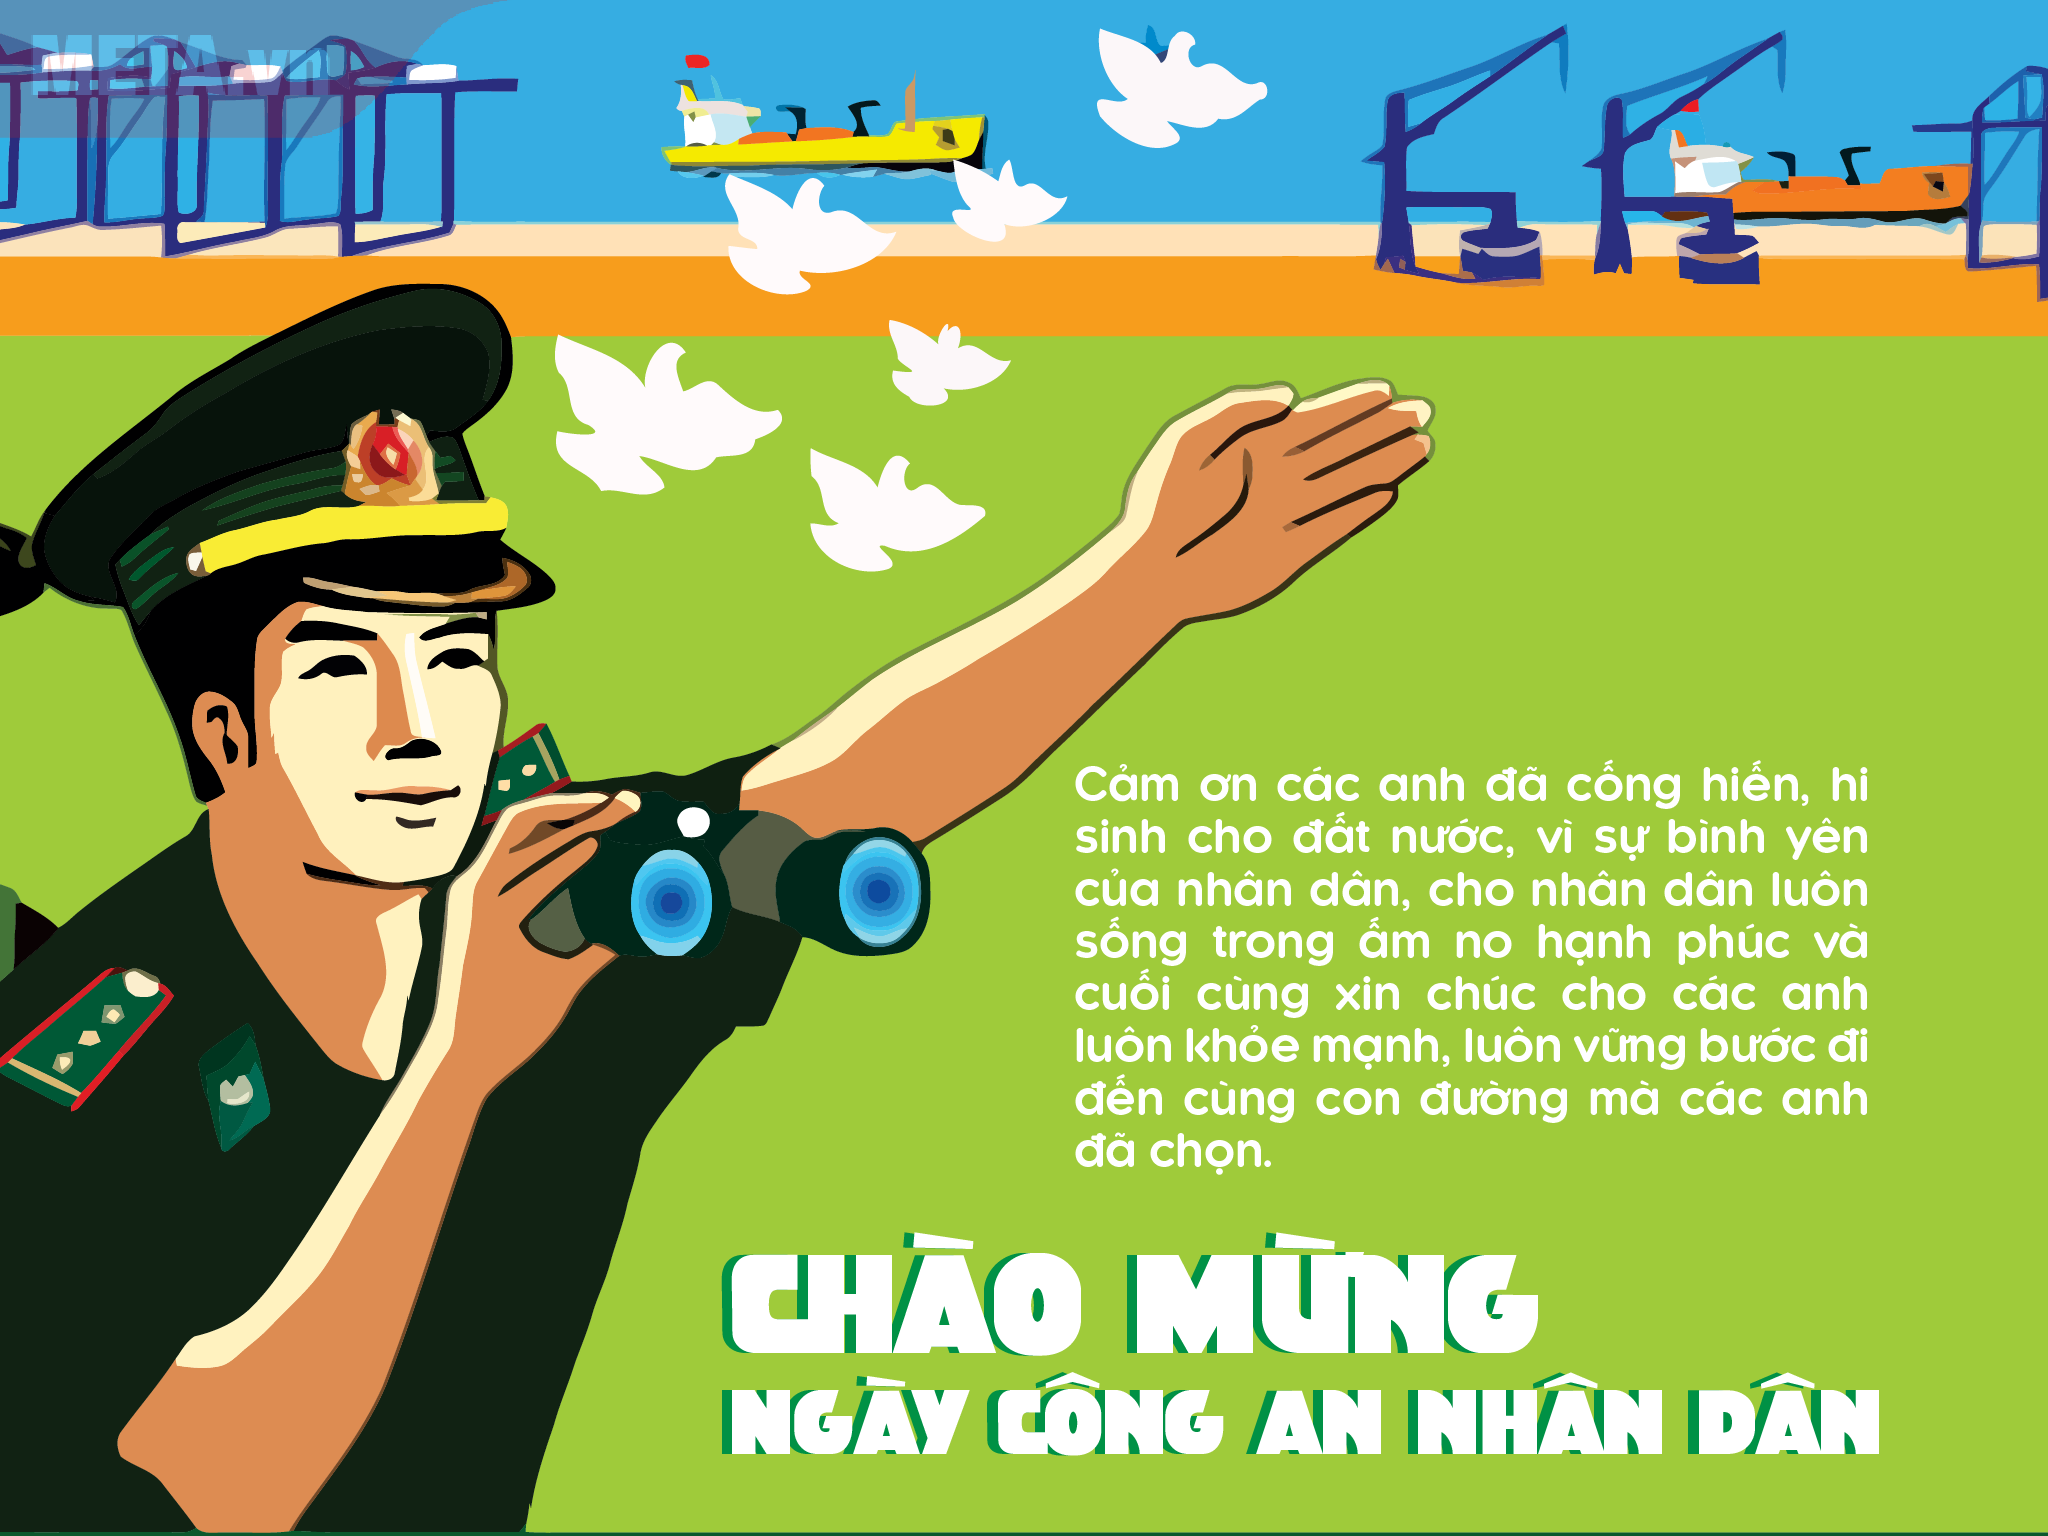 Hôm nay là ngày 19/8, ngày truyền thống của Công an nhân dân Việt Nam. Để gửi lời chúc tốt đẹp nhất đến các anh chị em trong ngành, hãy cùng xem hình ảnh thiệp chúc mừng được thiết kế đặc biệt dành riêng cho ngày này nhé!